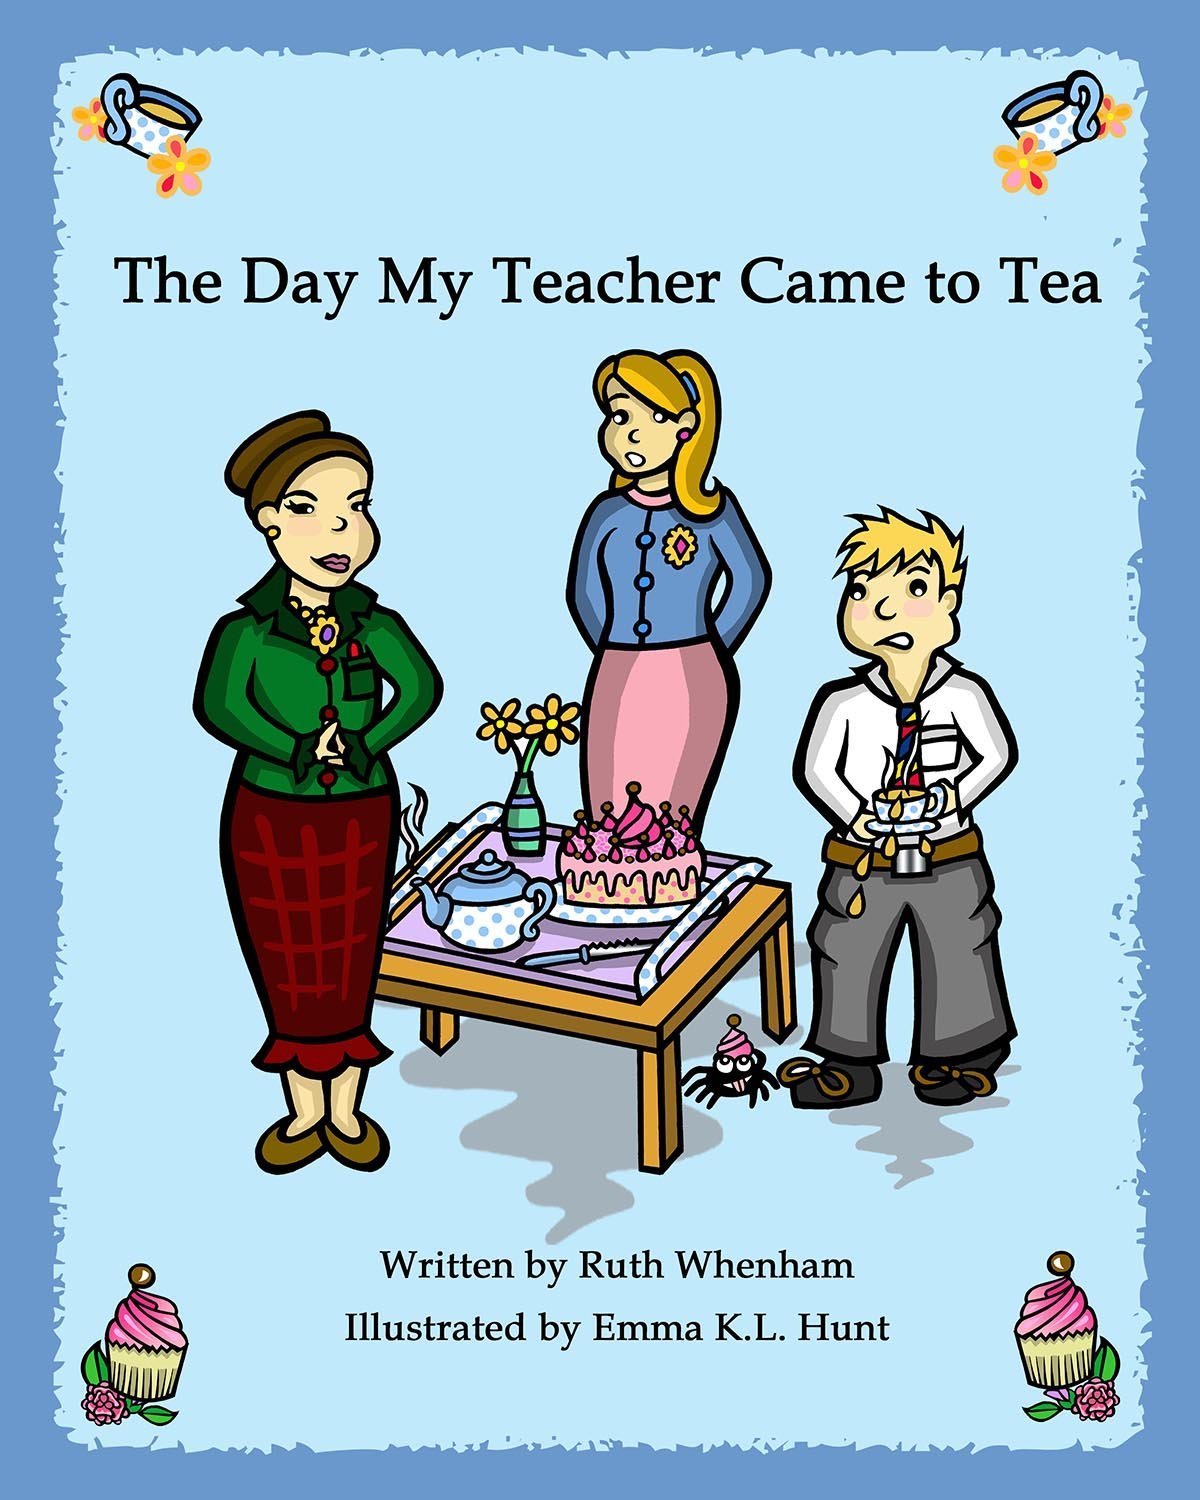 The Day My Teacher Came to Tea by Ruth Whenham